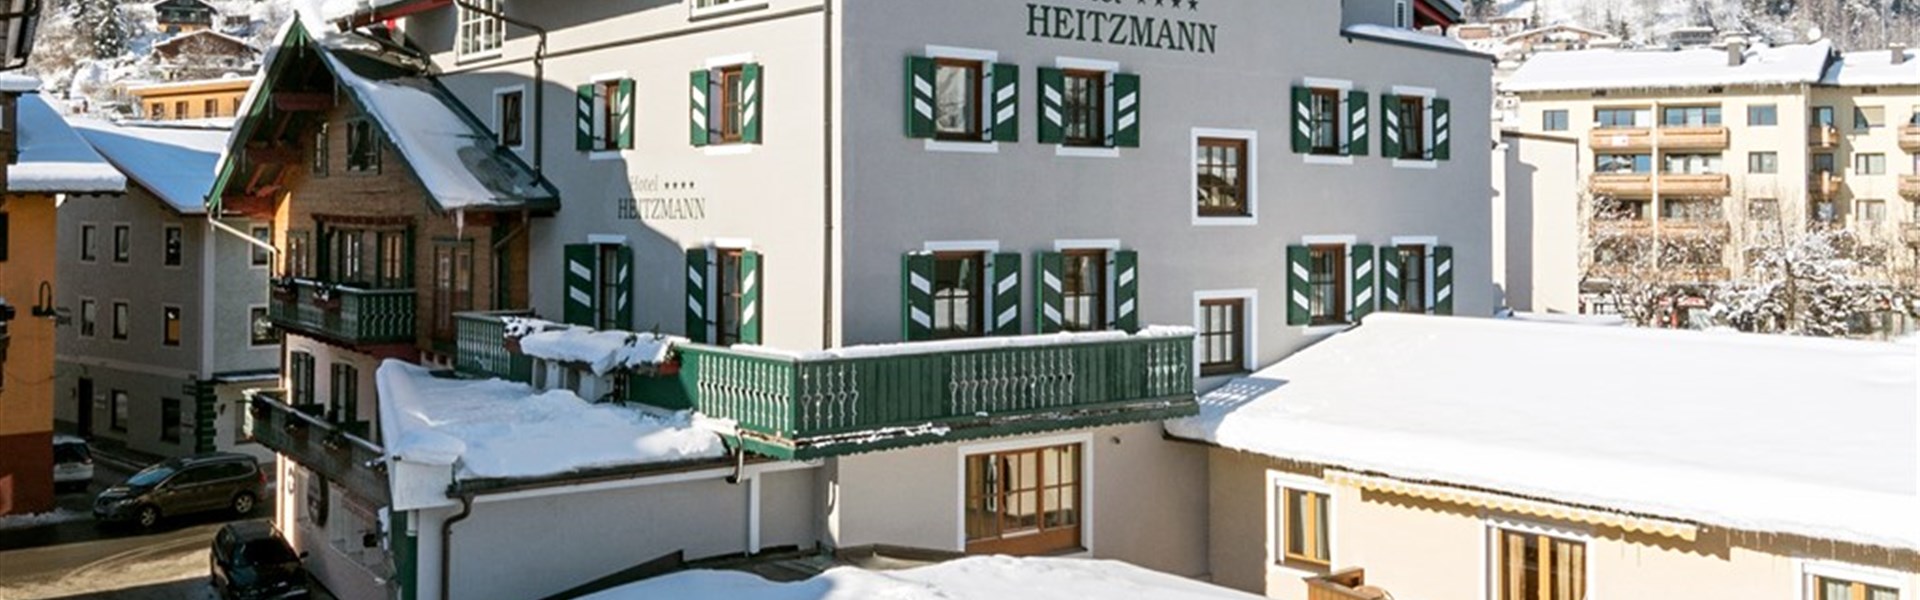 Marco Polo - Hotel Heitzmann (W) - 